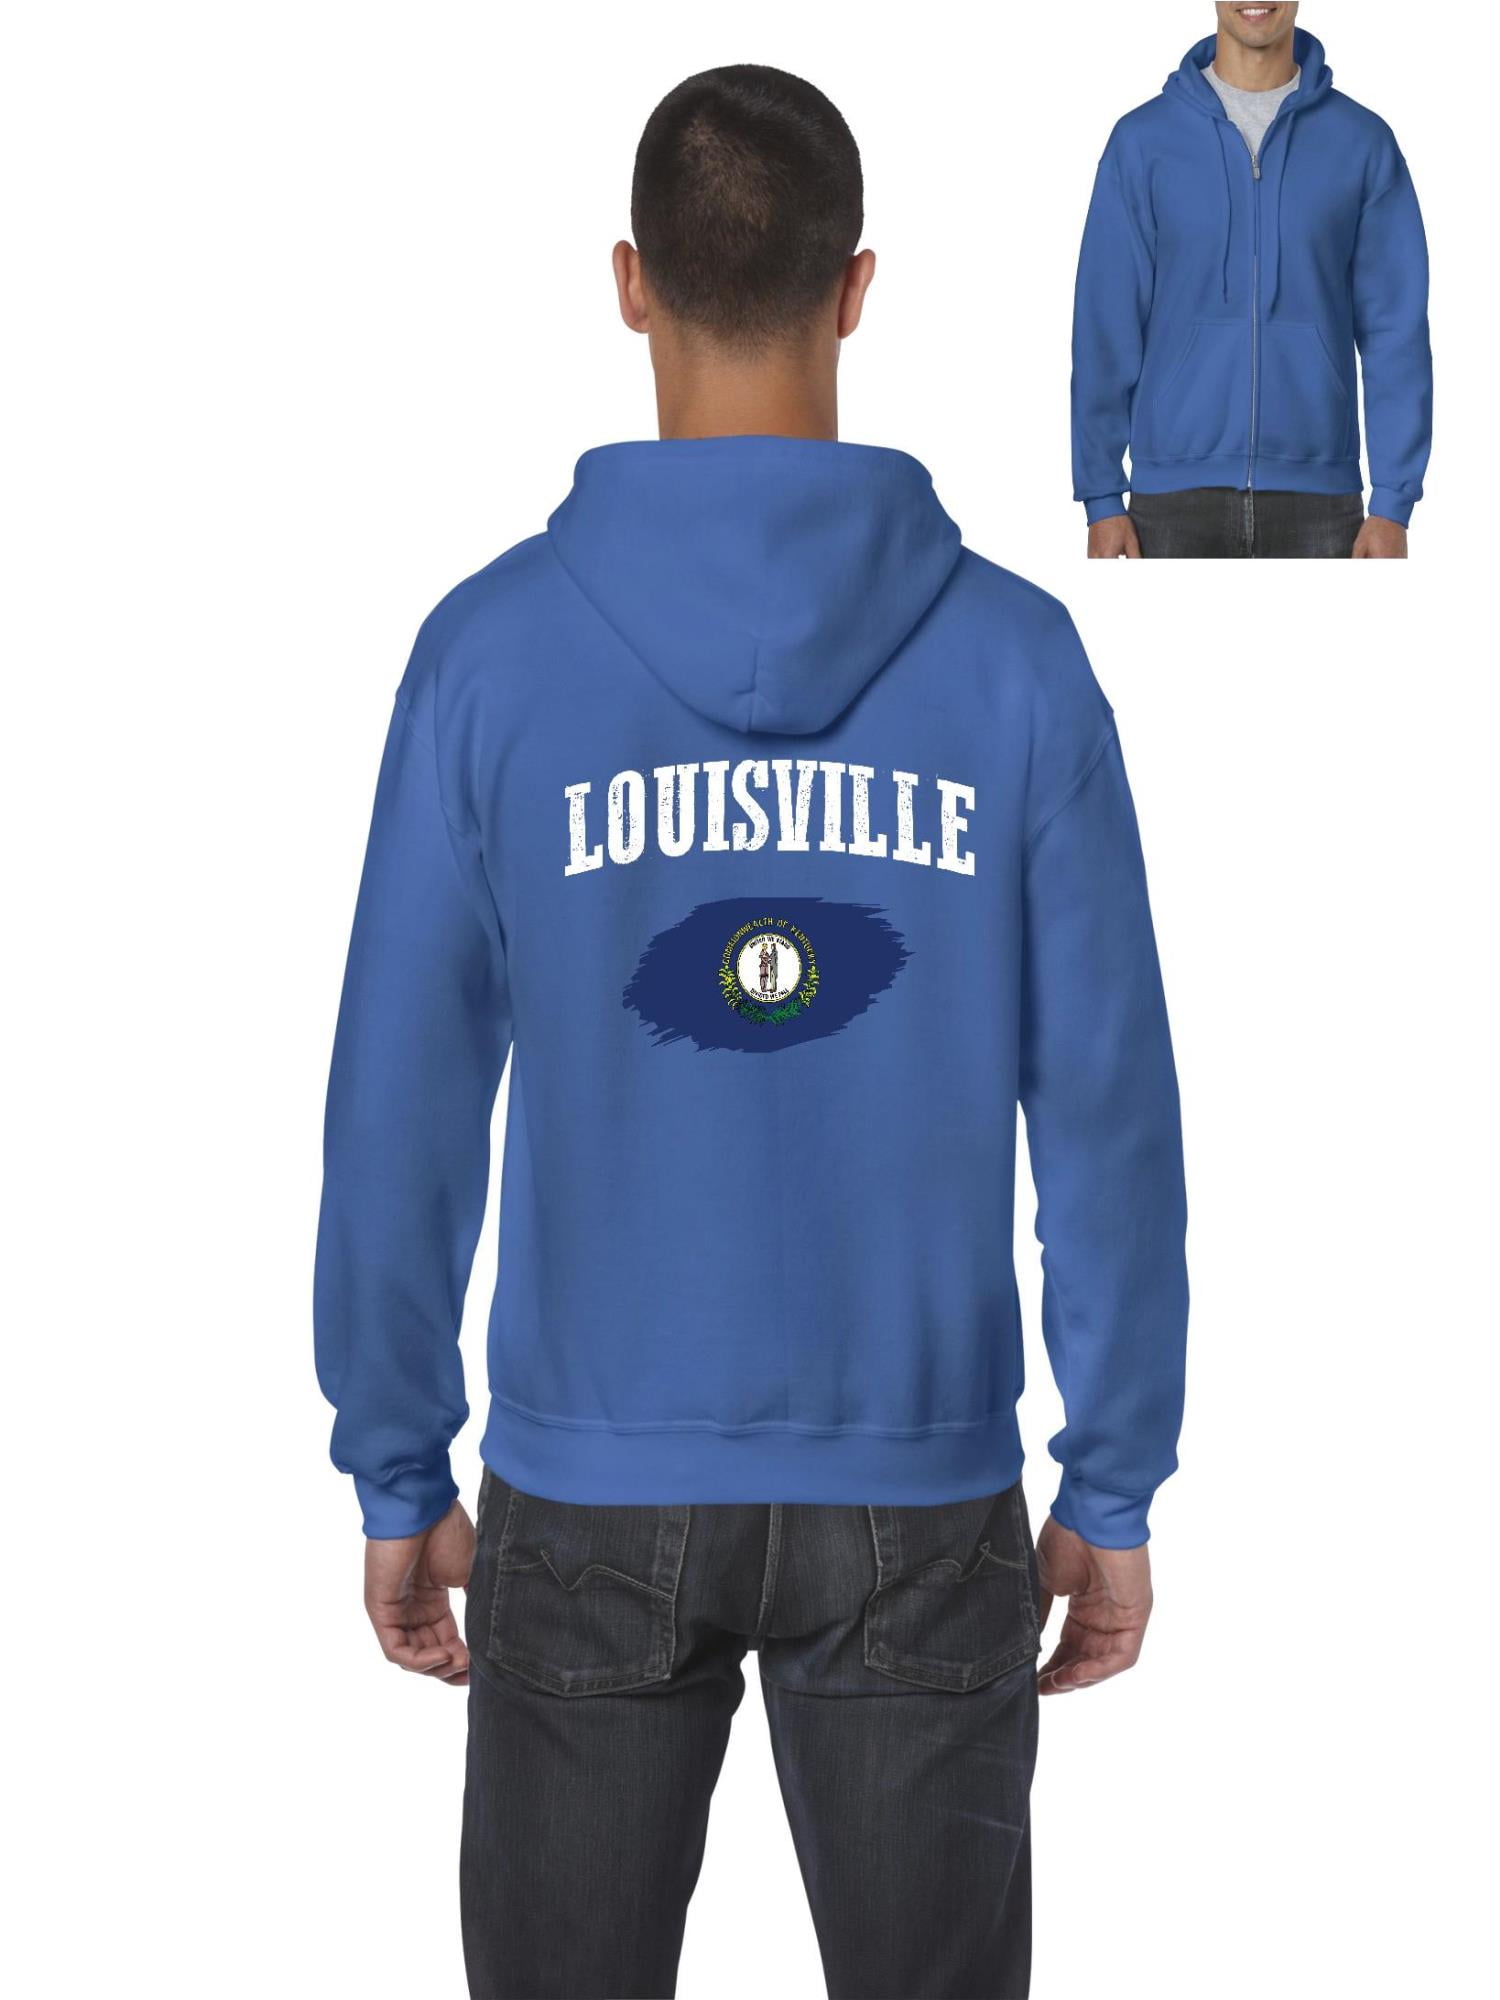 Normal is Boring - Men's Sweatshirt Full-Zip Pullover, up to Men Size 5XL -  Louisville 